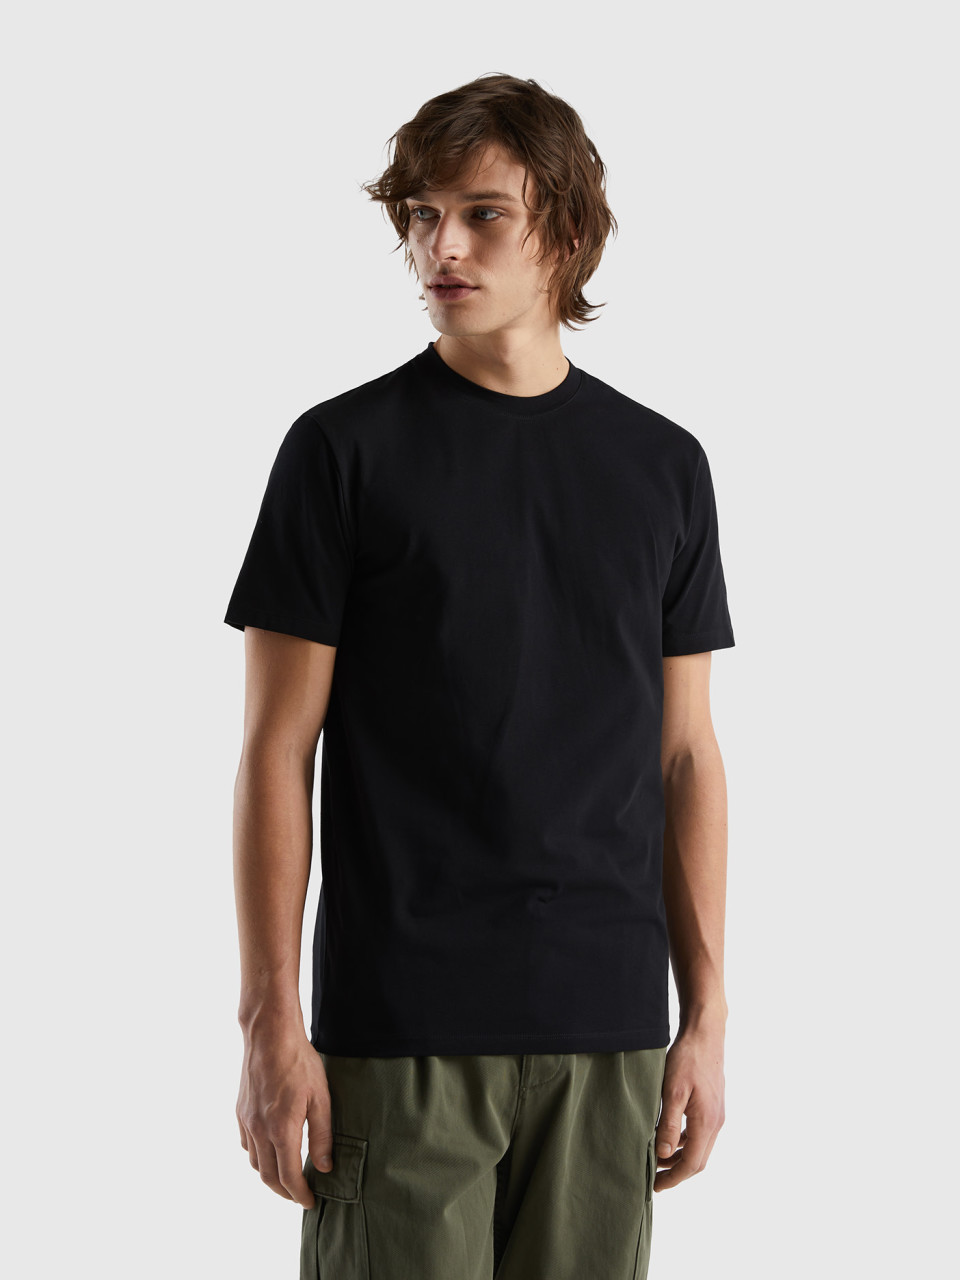 Benetton, Camiseta Slim Fit De Algodón Elástico, Negro, Hombre